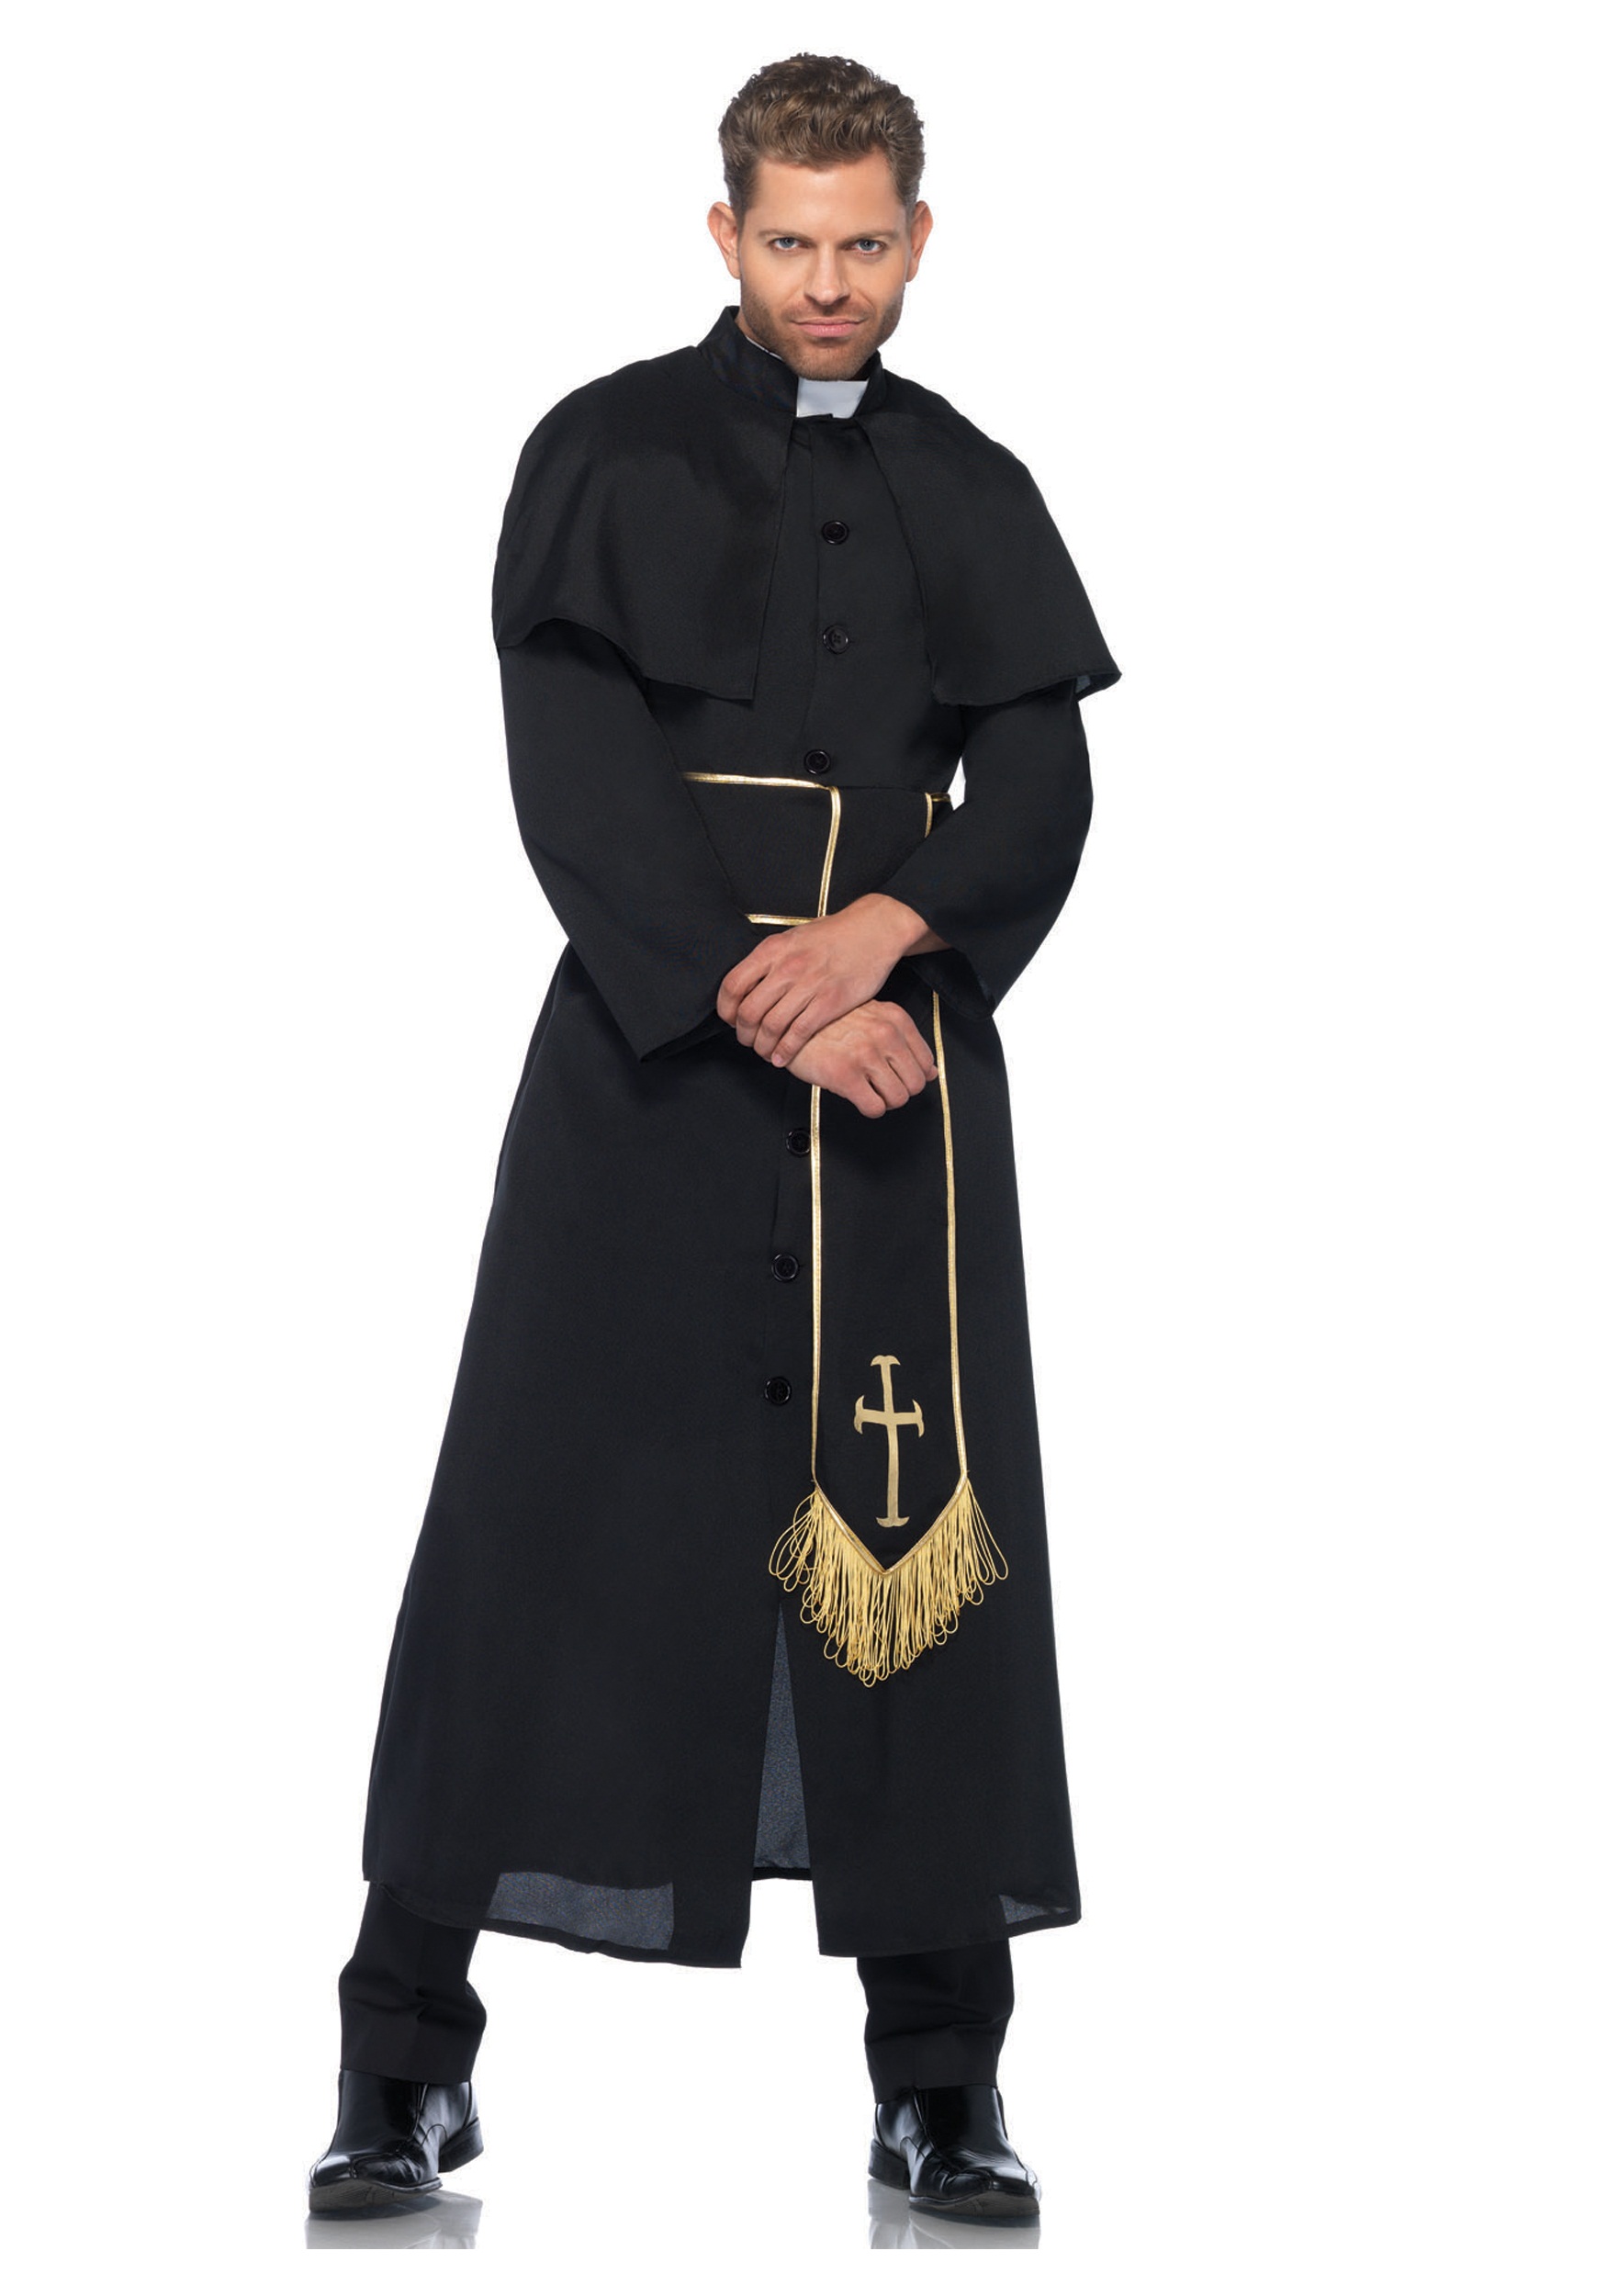 Одежда православных священников